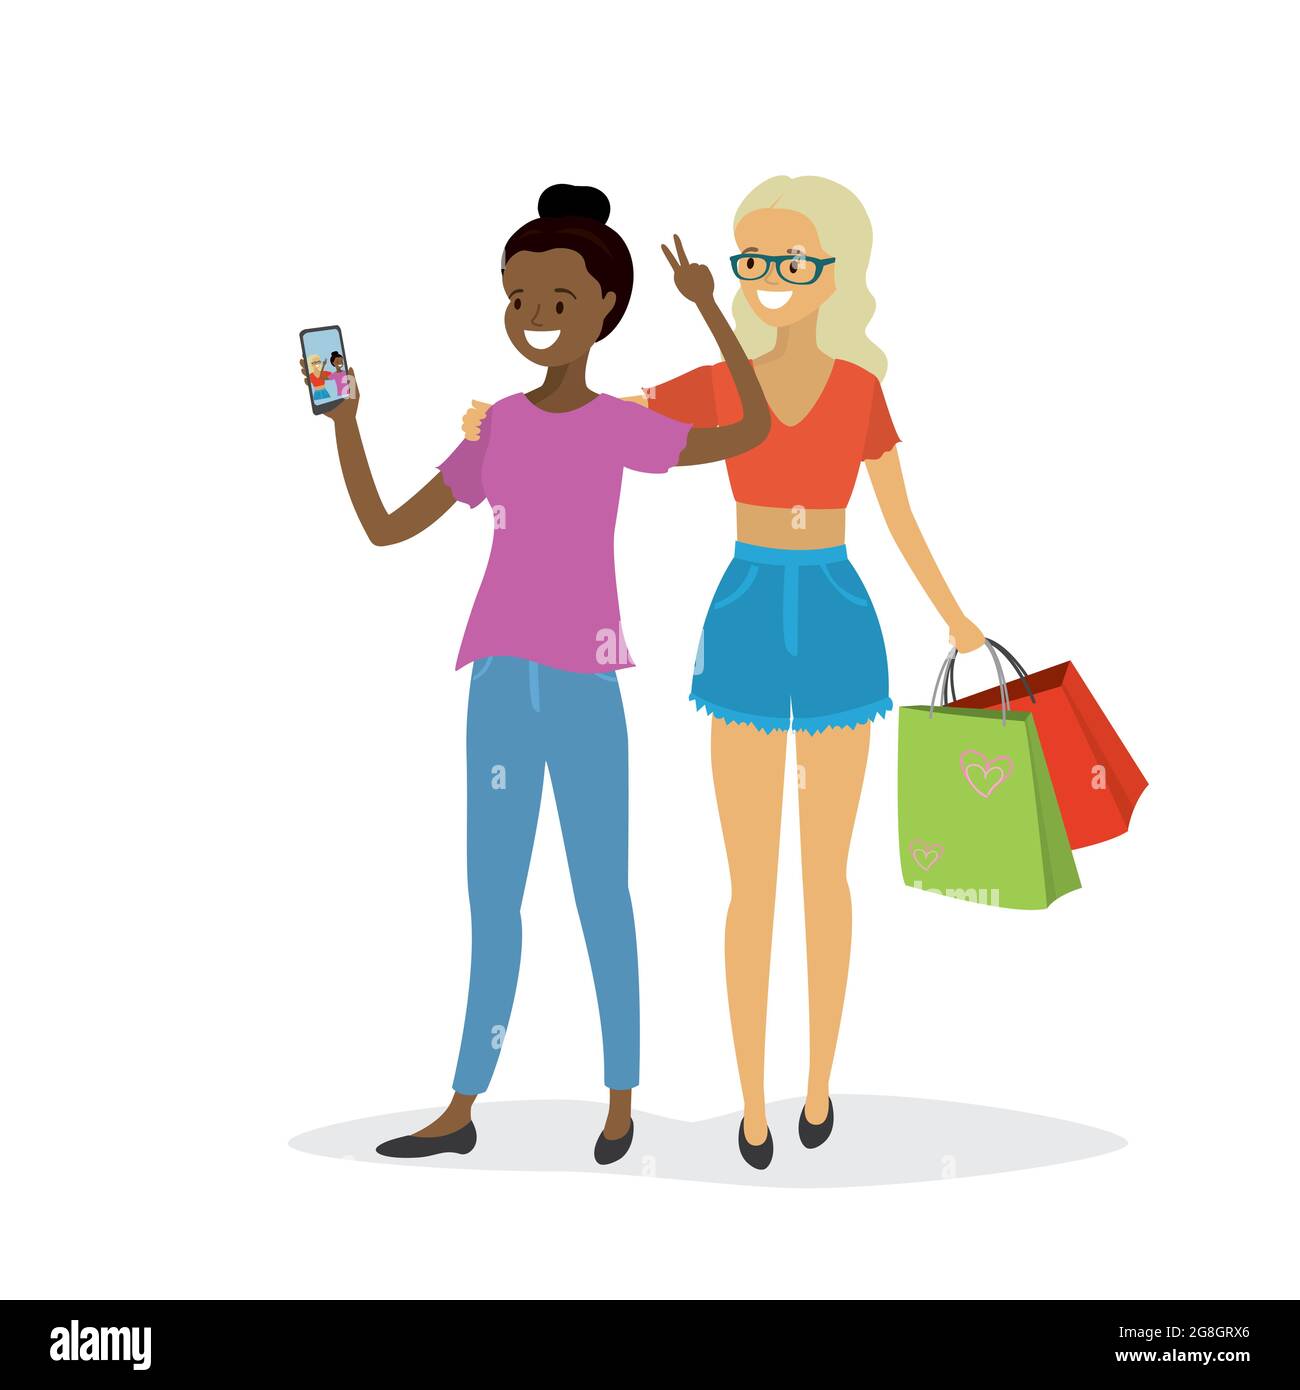 Glückliche Frauen Paar nehmen ein Selfie, Schönheit junge weibliche afroamerikanische und kaukasische Zeichen isoliert auf weißem Hintergrund, flache Vektor-Illustration Stock Vektor